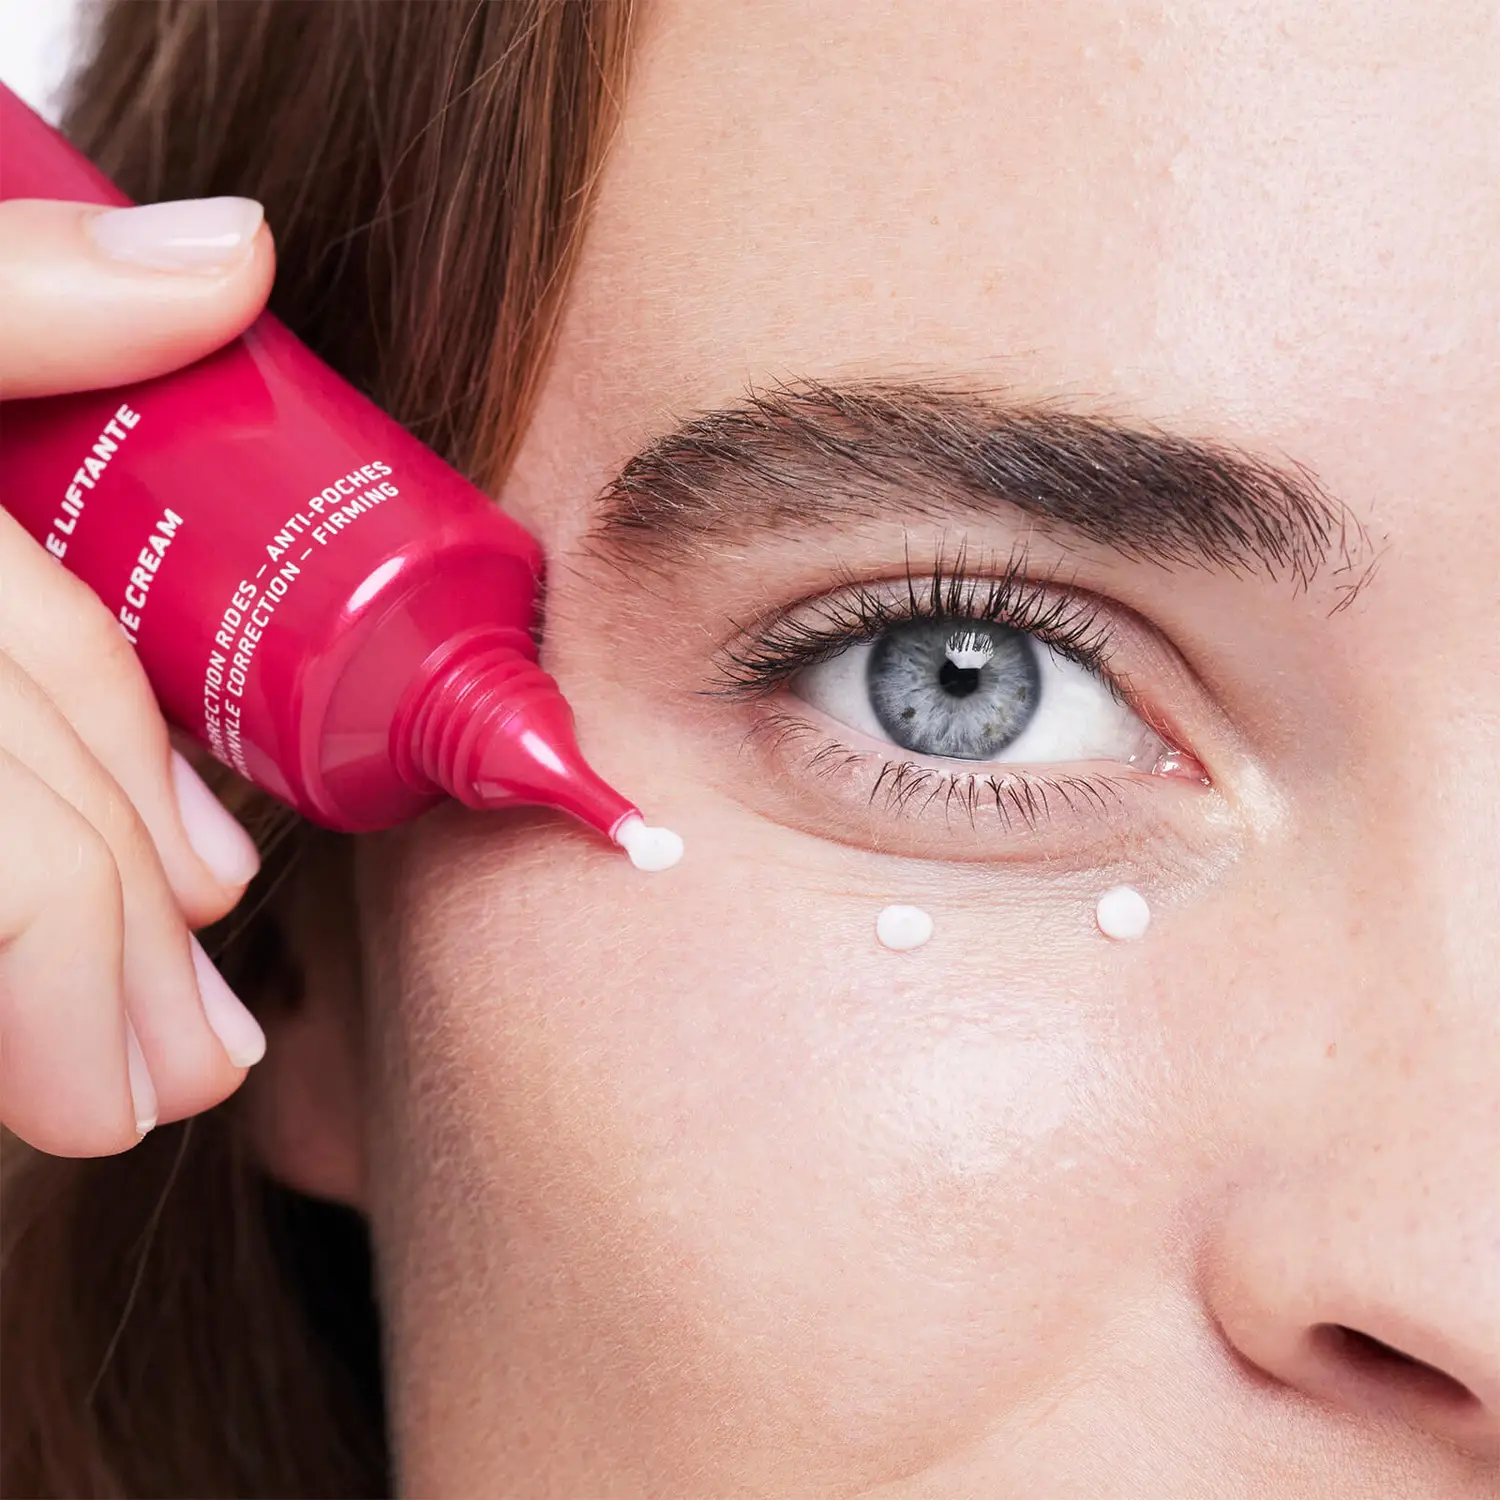 NUXE Crema Reafirmante Contorno de Ojos, Merveillance Lift 15 ml. Contorno de ojos reafirmante - corrección arrugas, anti-bolsas. 97 % de ingredientes de origen natural